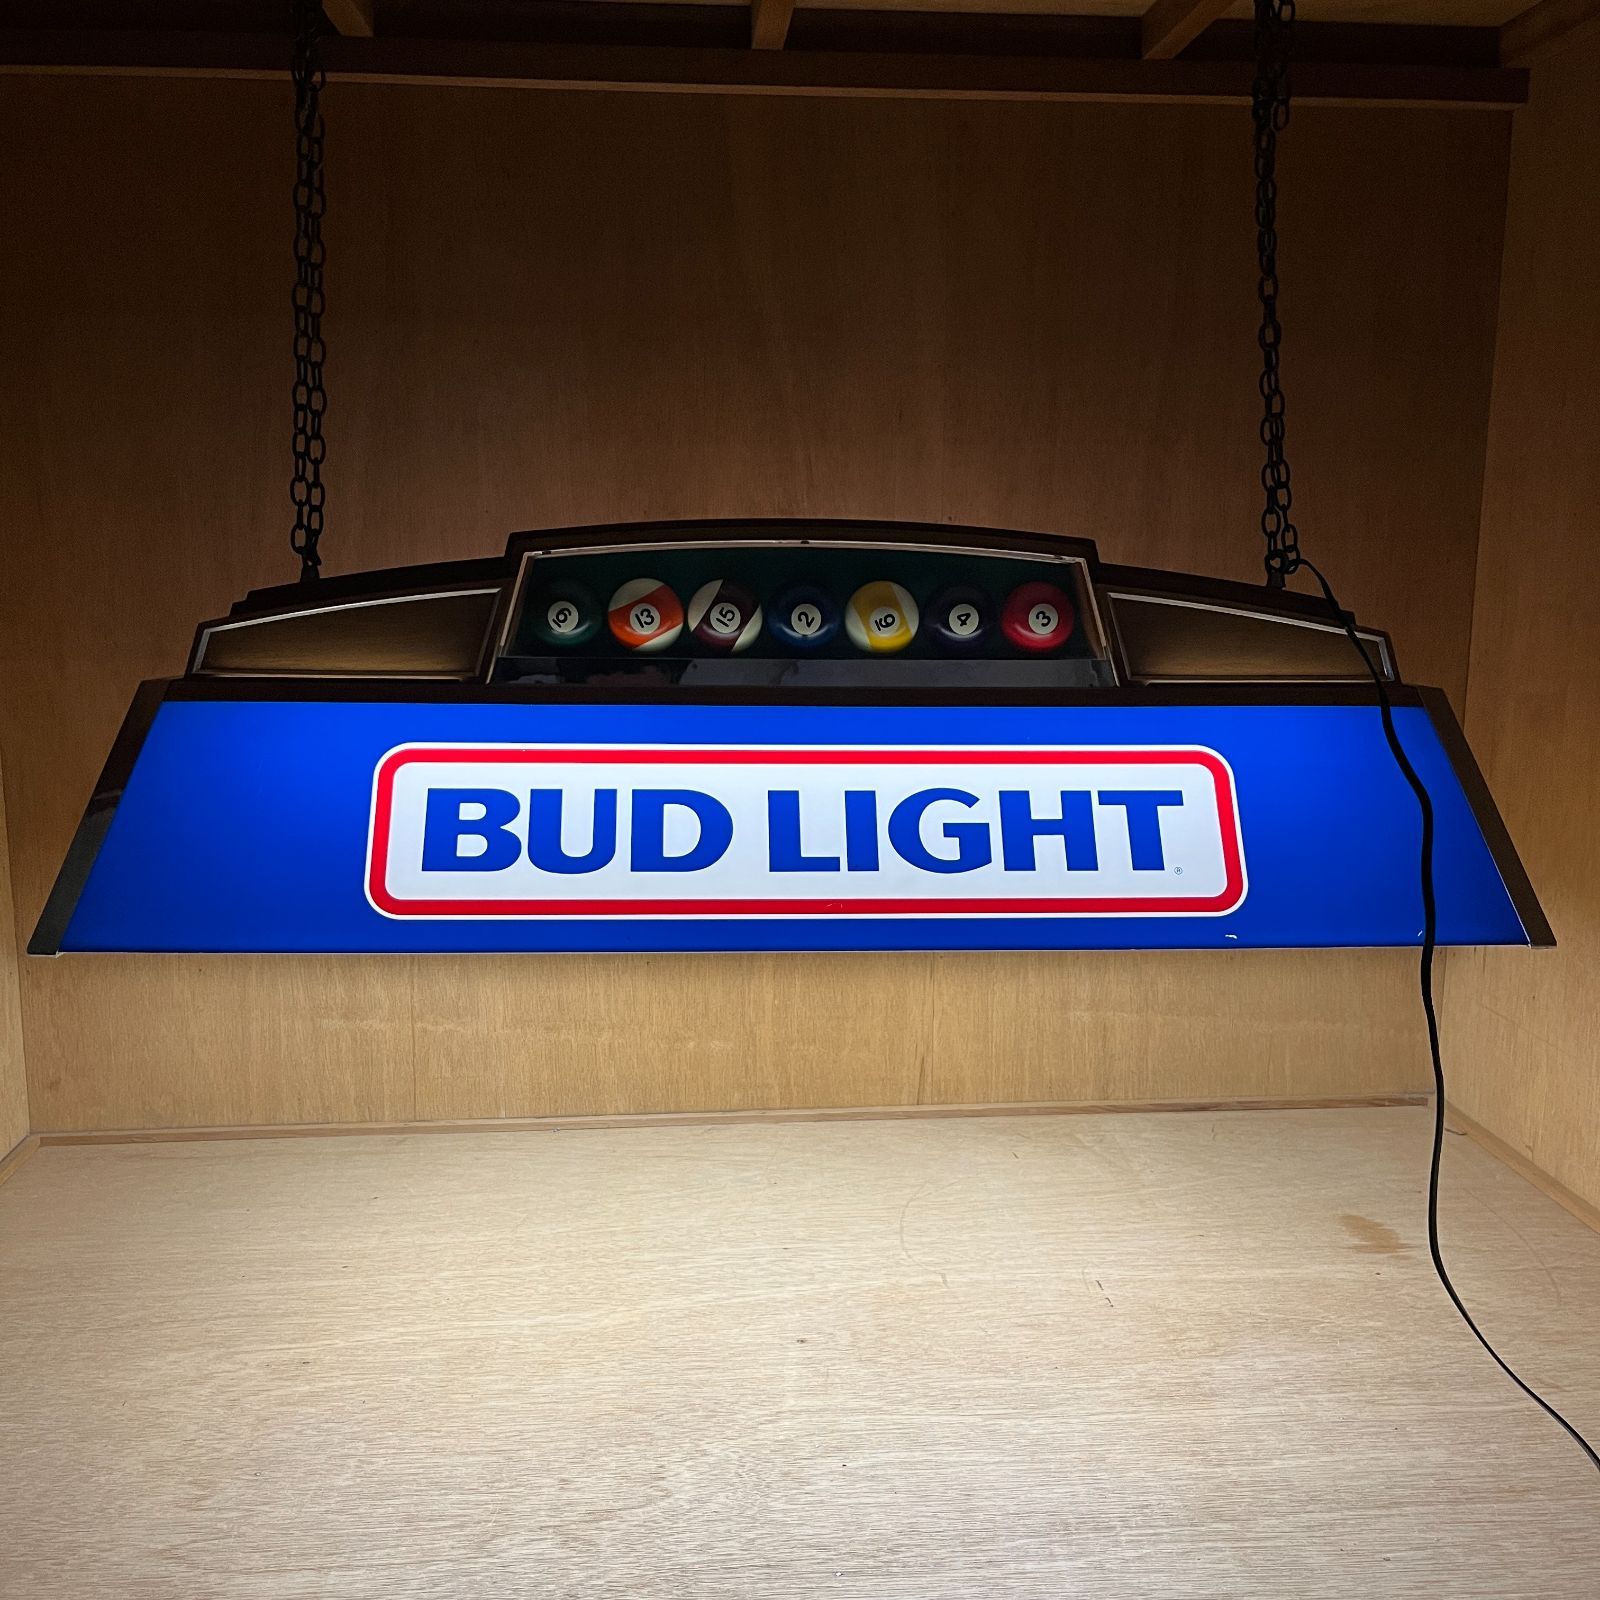 1987年 BUDLIGHT バドライト プールバーライト ヴィンテージ - 照明